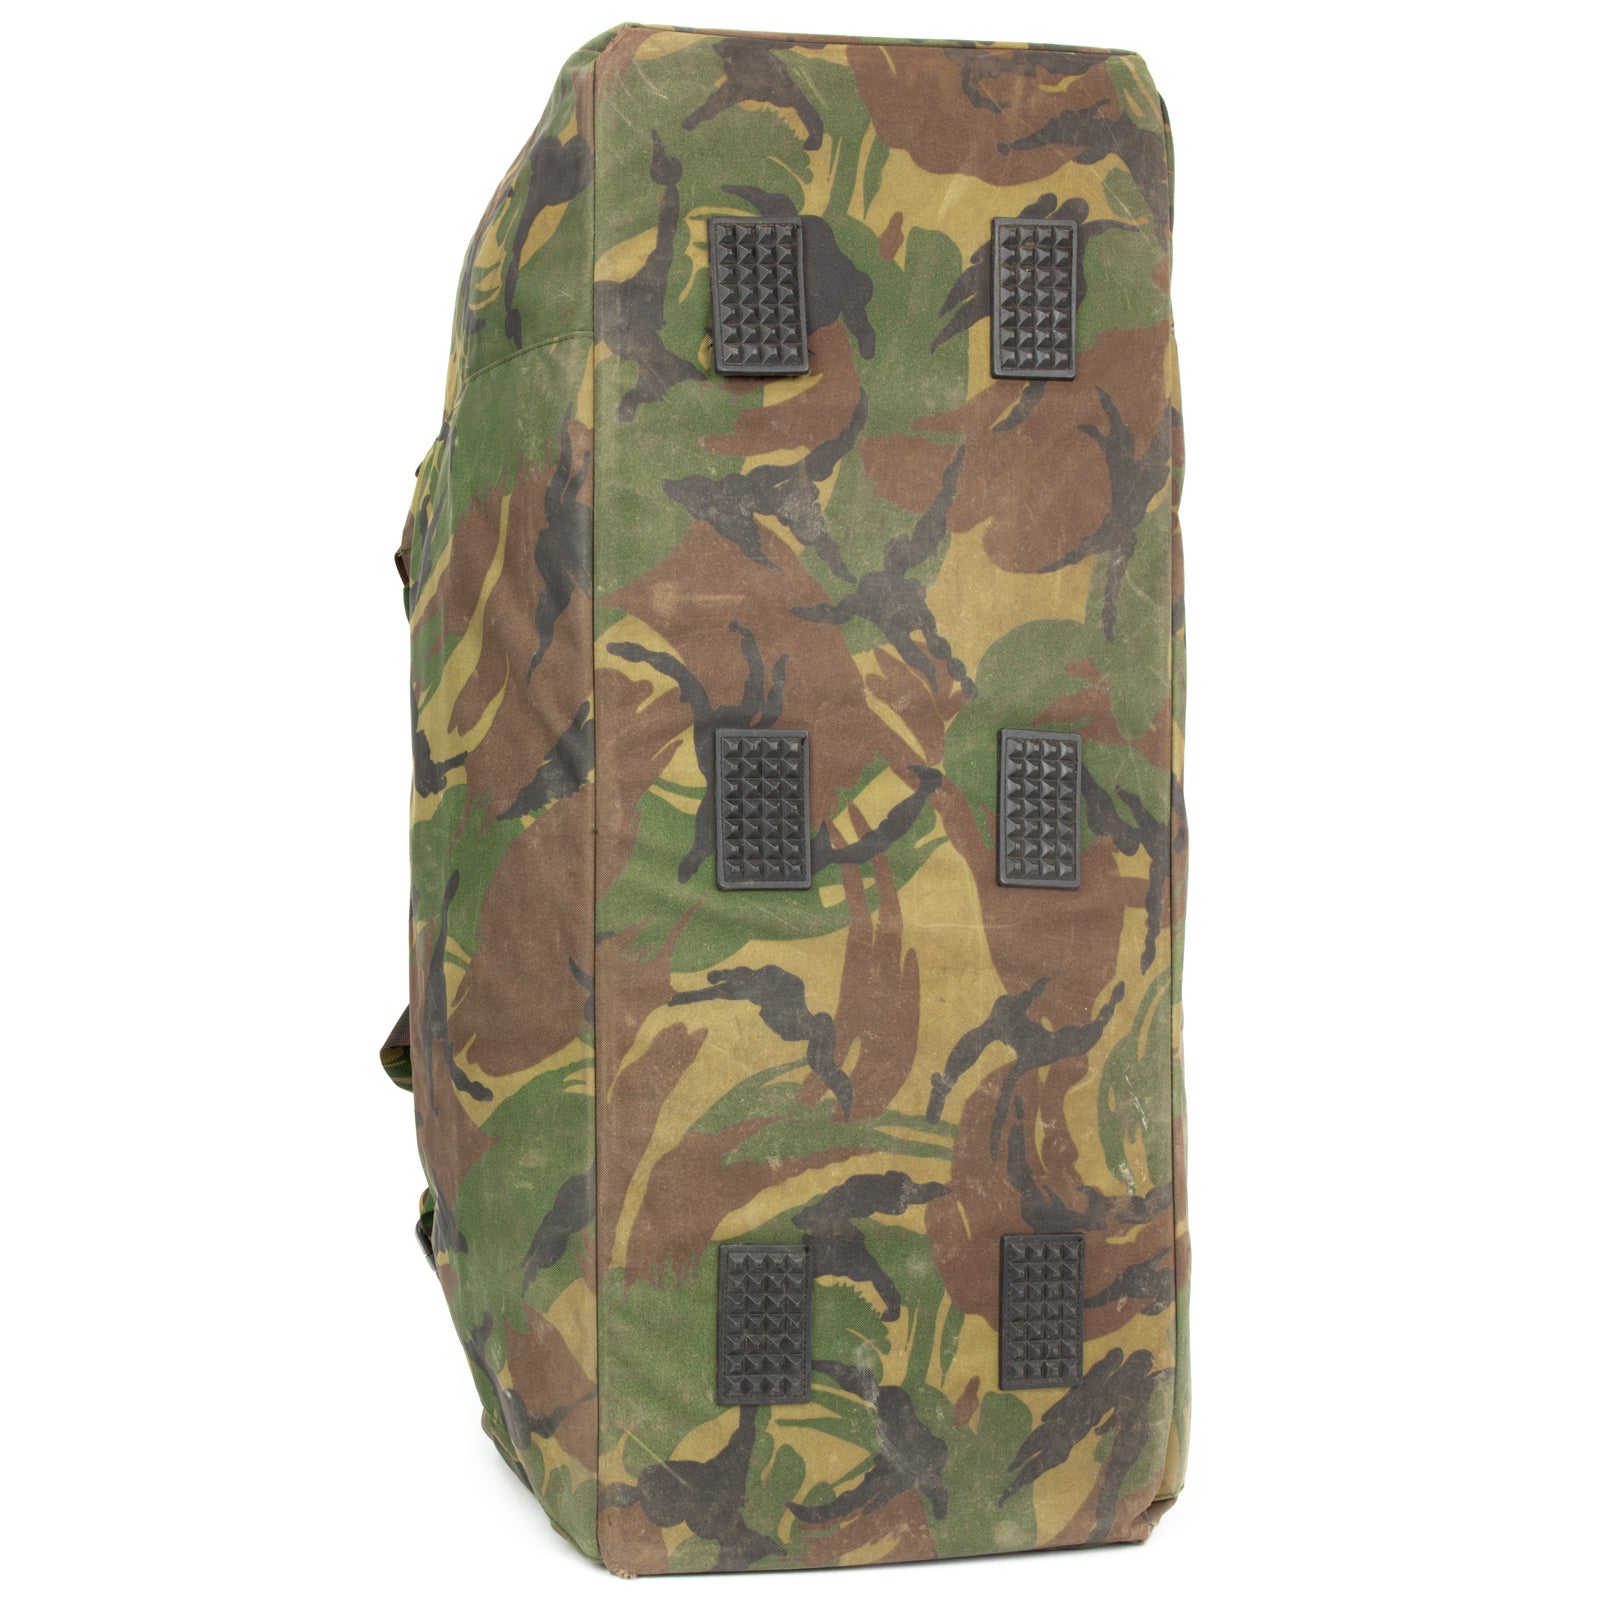 Dutch Army Woodland Backpack / Duffel Bag